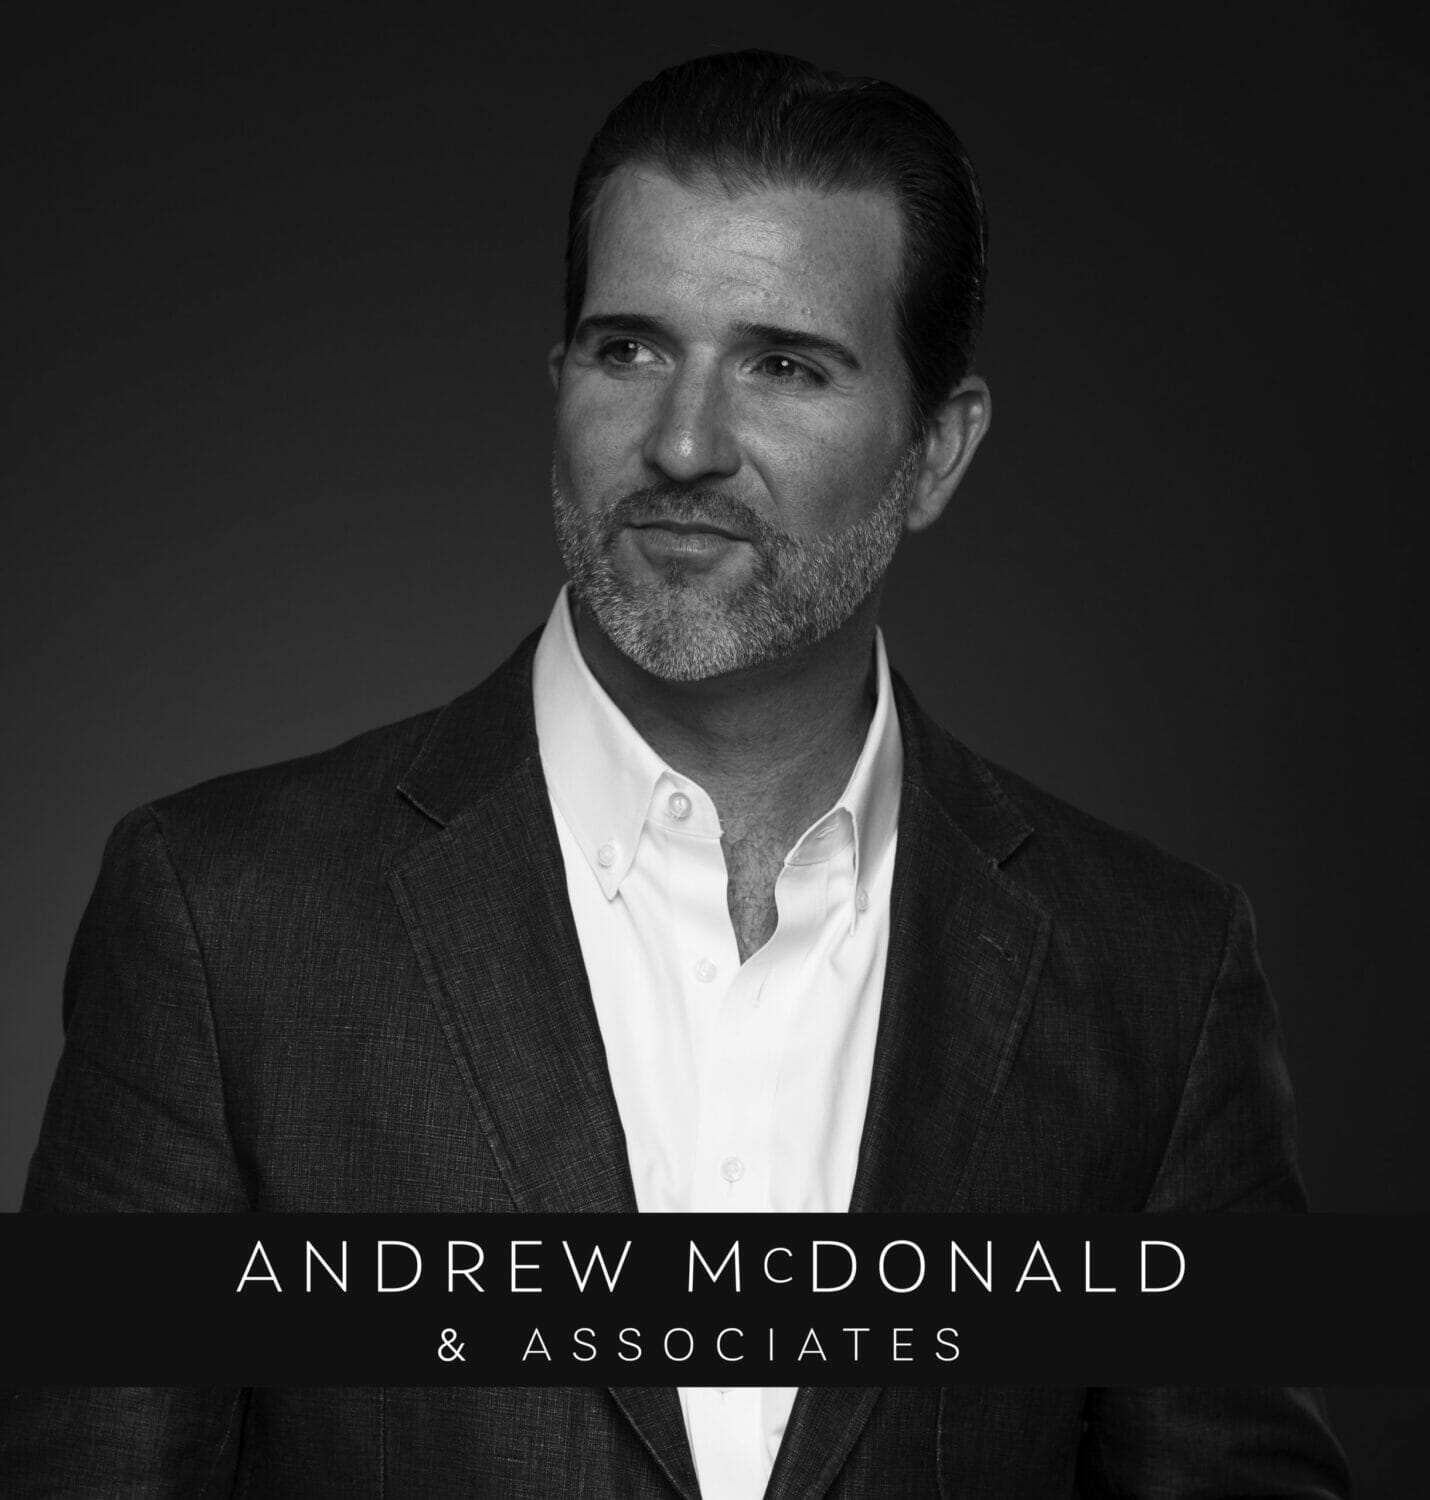 Andrew McDonald